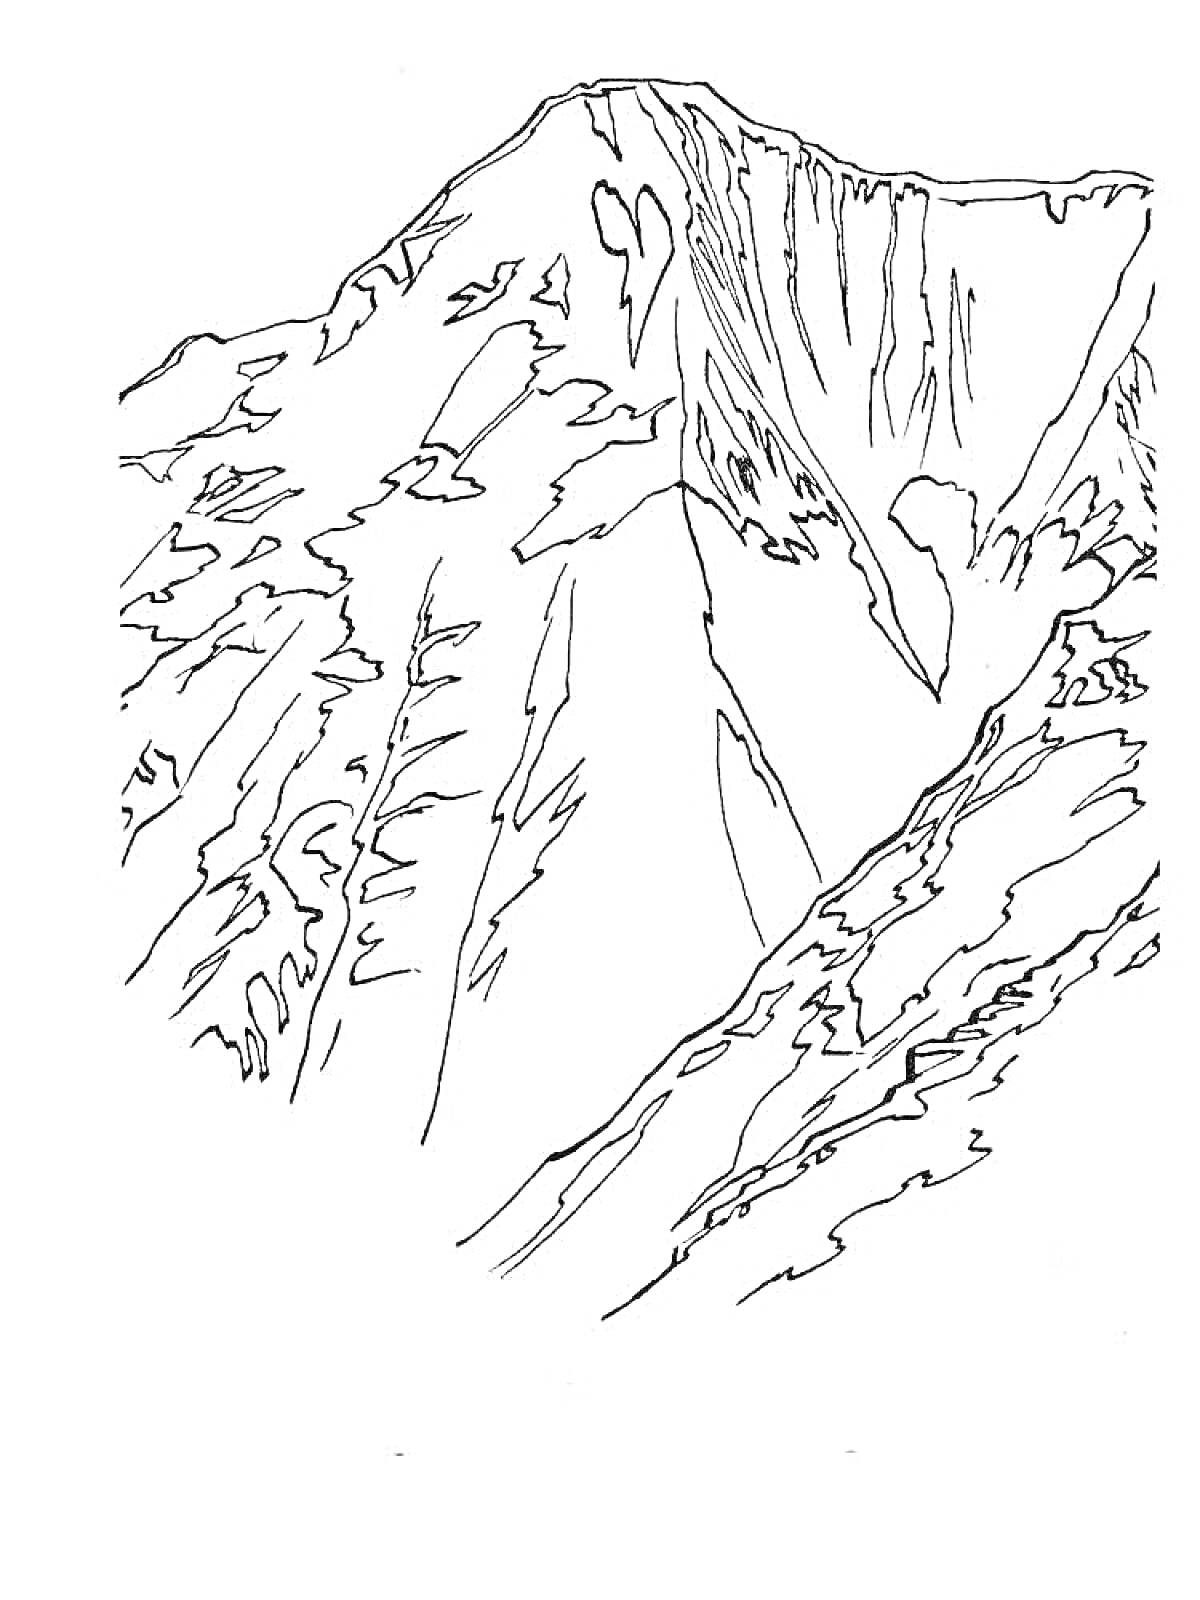 Линии контура горы Эльбрус, изображающие вершину горы с окружающими её склонами и деталями рельефа.